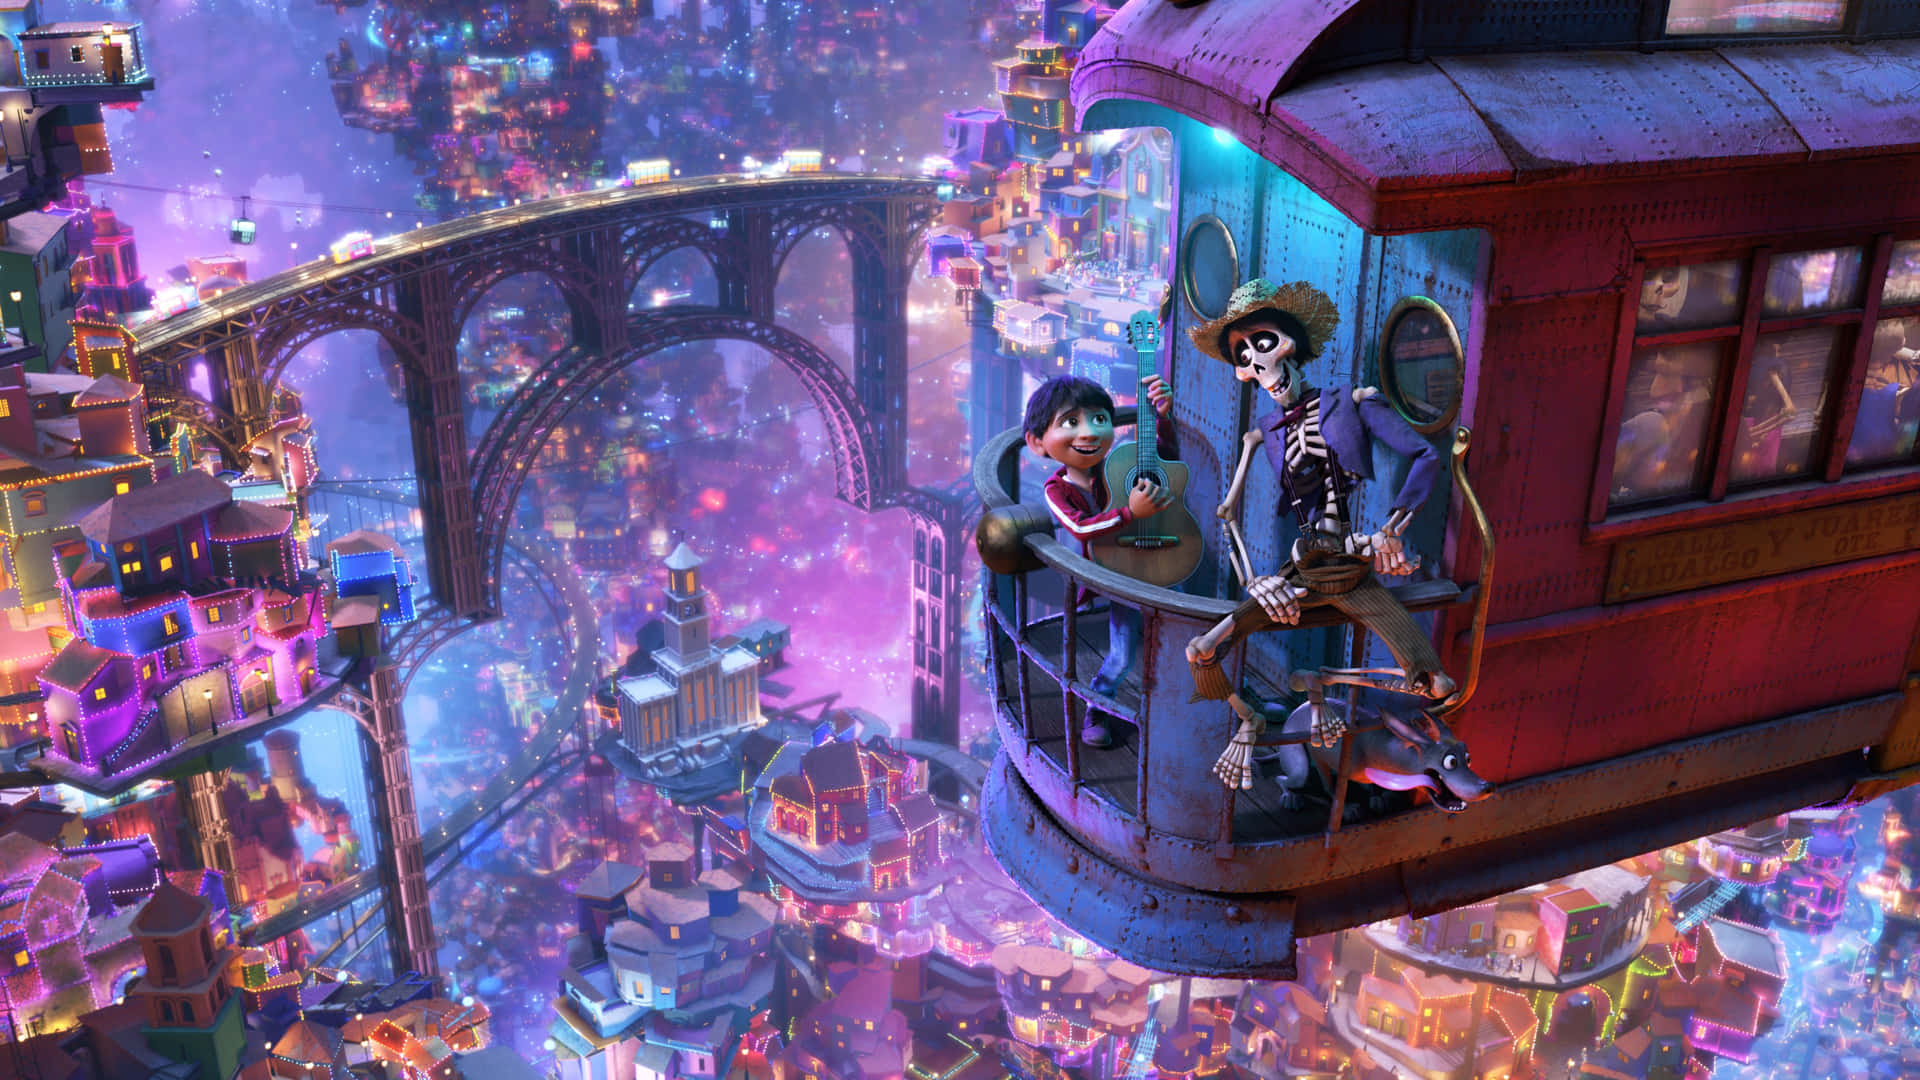 Disney Pixar's Coco inspirerer generationer med sin magiske historie om familie, musik og skæbne. Wallpaper